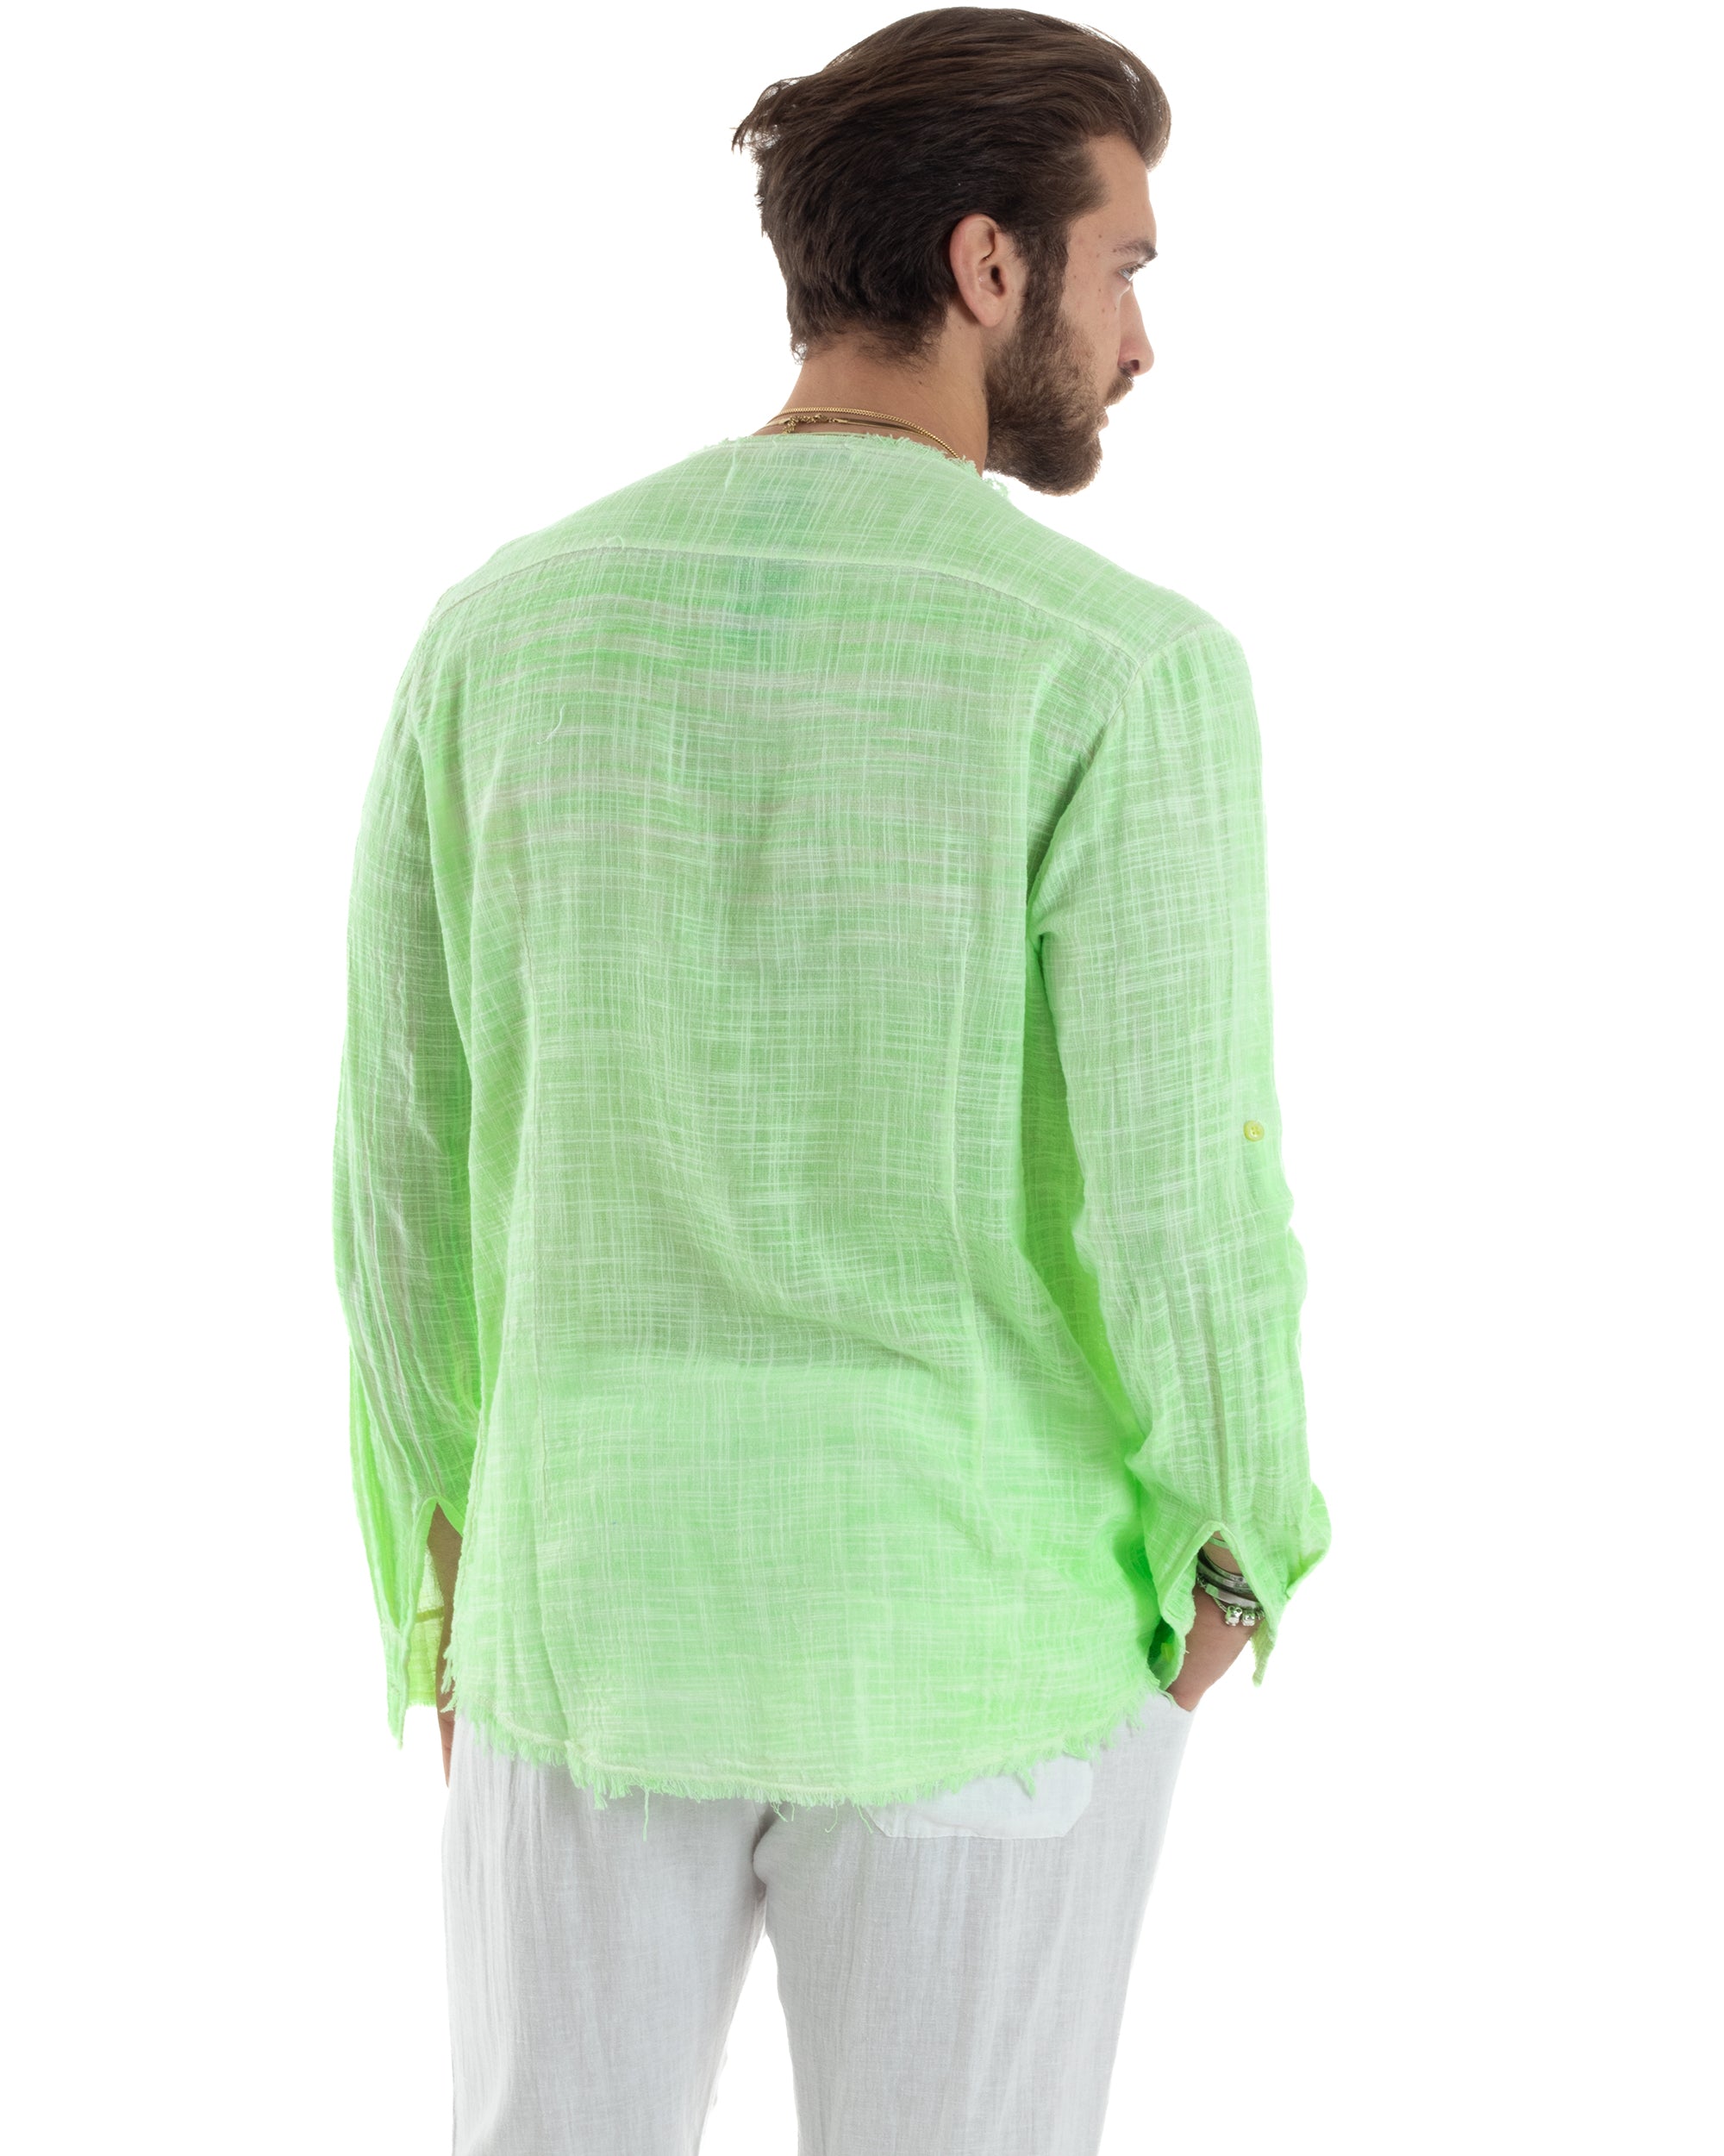 Camicia Uomo Sfrangiata Cotone Lino Manica Lunga Tinta Unita Verde Fluo GIOSAL-C2836A